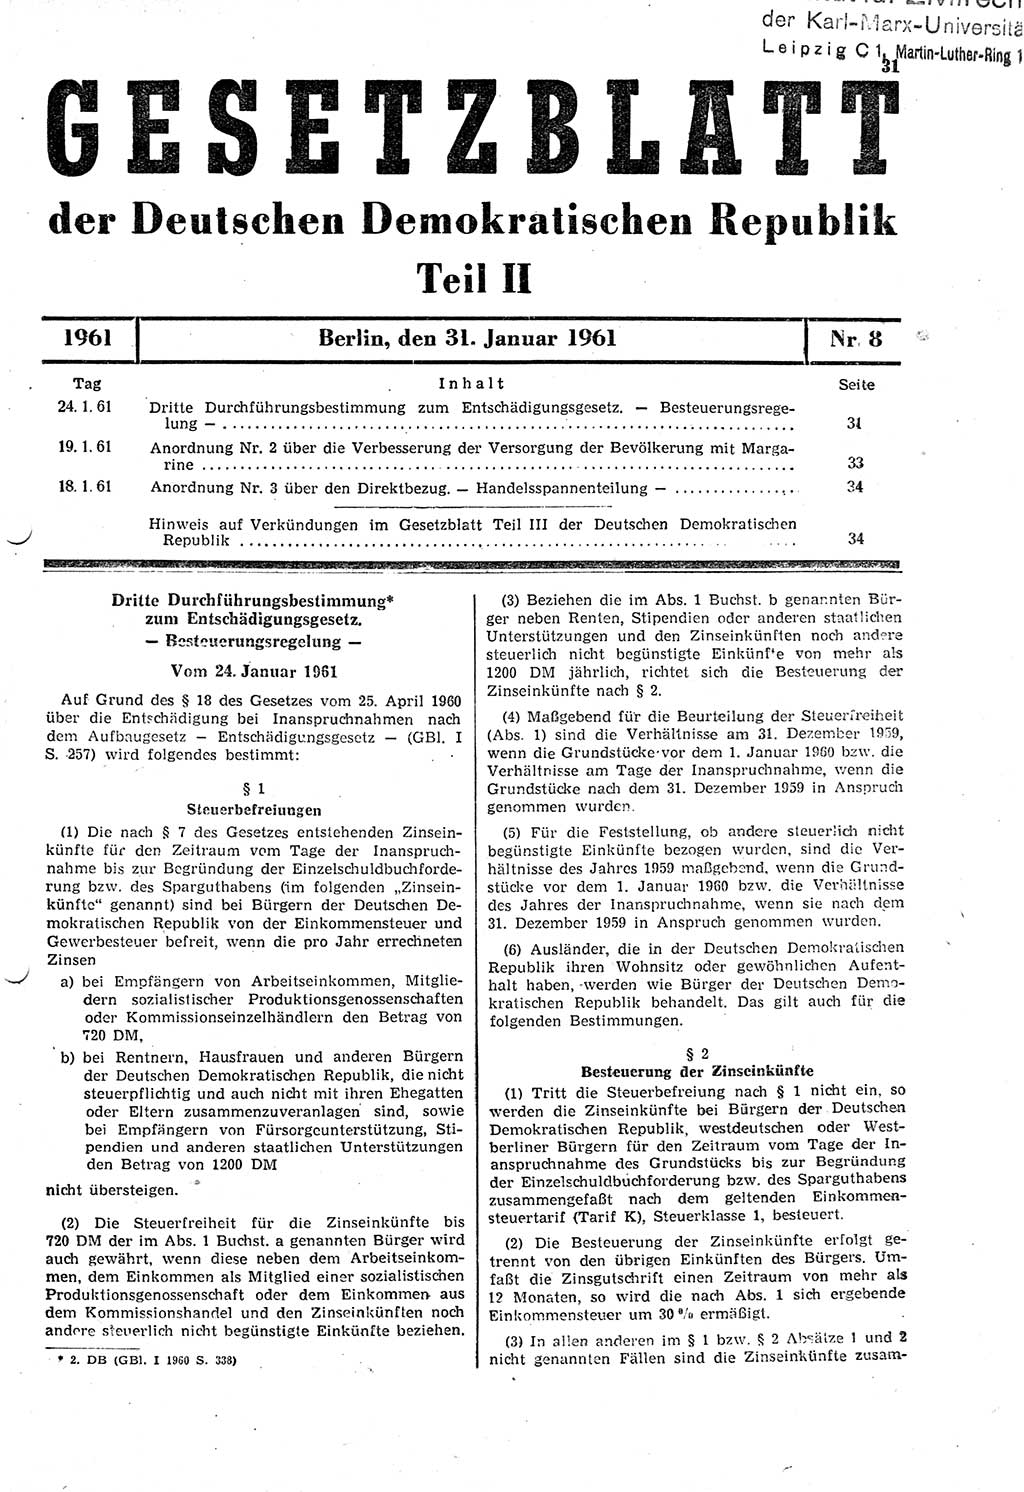 Gesetzblatt (GBl.) der Deutschen Demokratischen Republik (DDR) Teil ⅠⅠ 1961, Seite 31 (GBl. DDR ⅠⅠ 1961, S. 31)